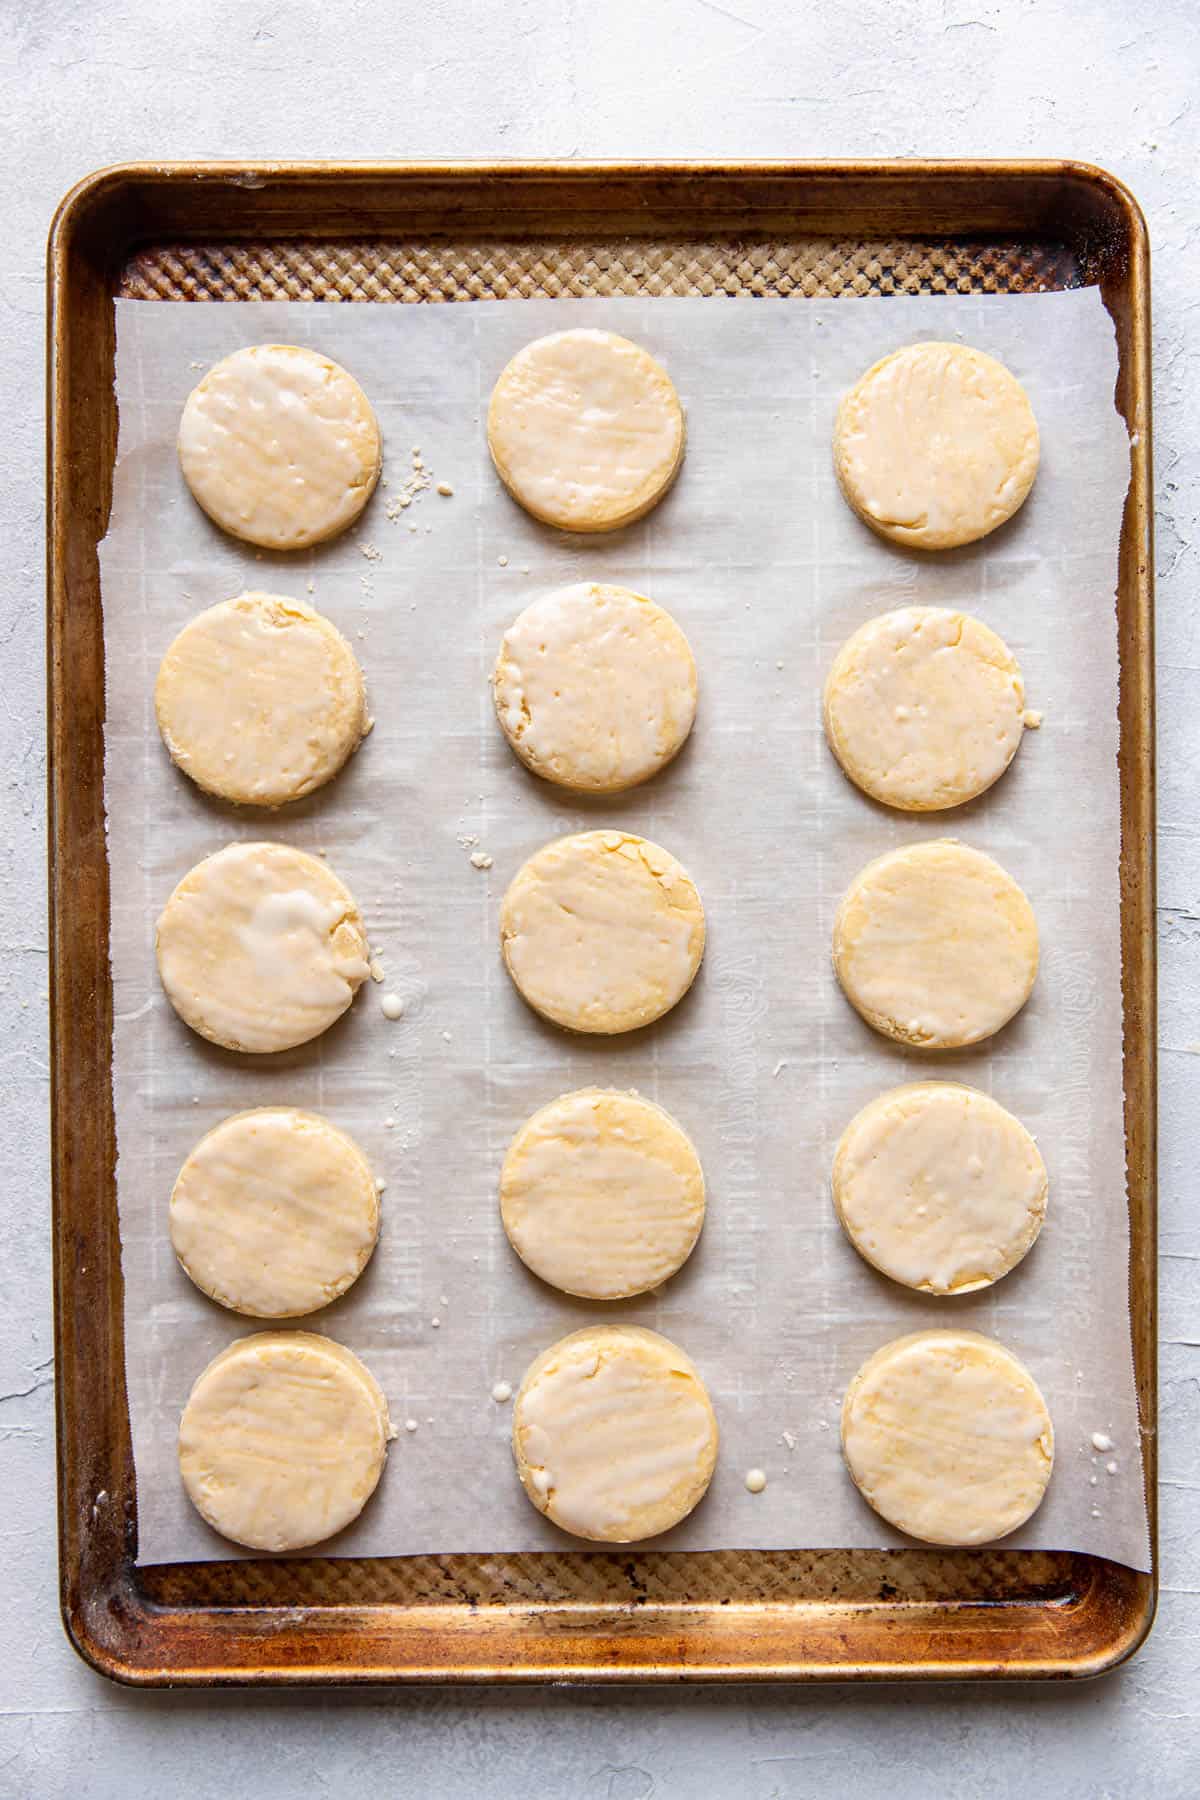 Irish scone prior to baking on cookie sheet.